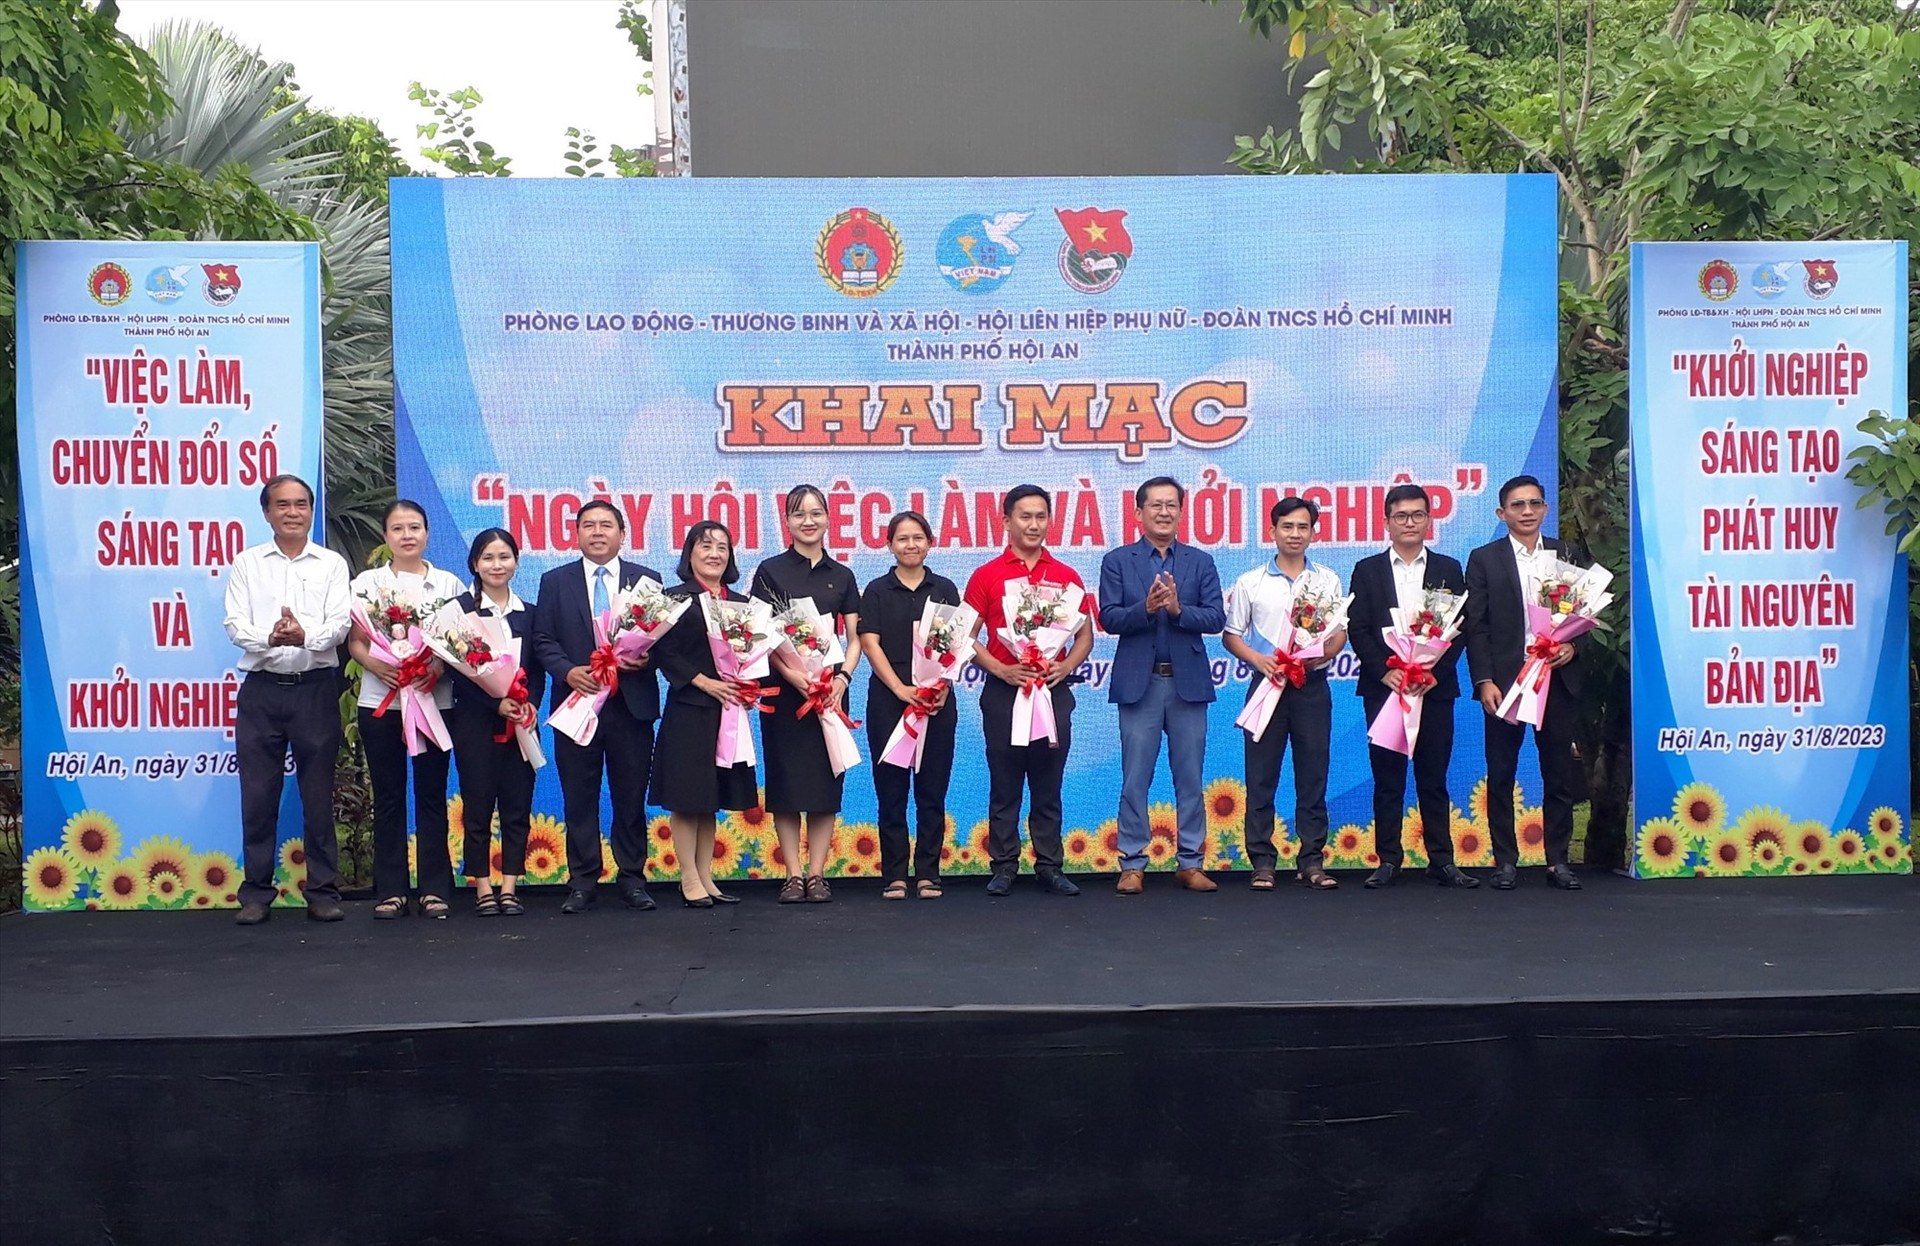 Phó Chủ tịch UBND thành phố Nguyễn Văn Lanh và lãnh đạo Phòng LĐ-TB&XH thành phố tặng hoa cho đại diện 12 doanh nghiệp và cơ sở đào tạo, tuyển dụng lao động tham gia Ngày hội.